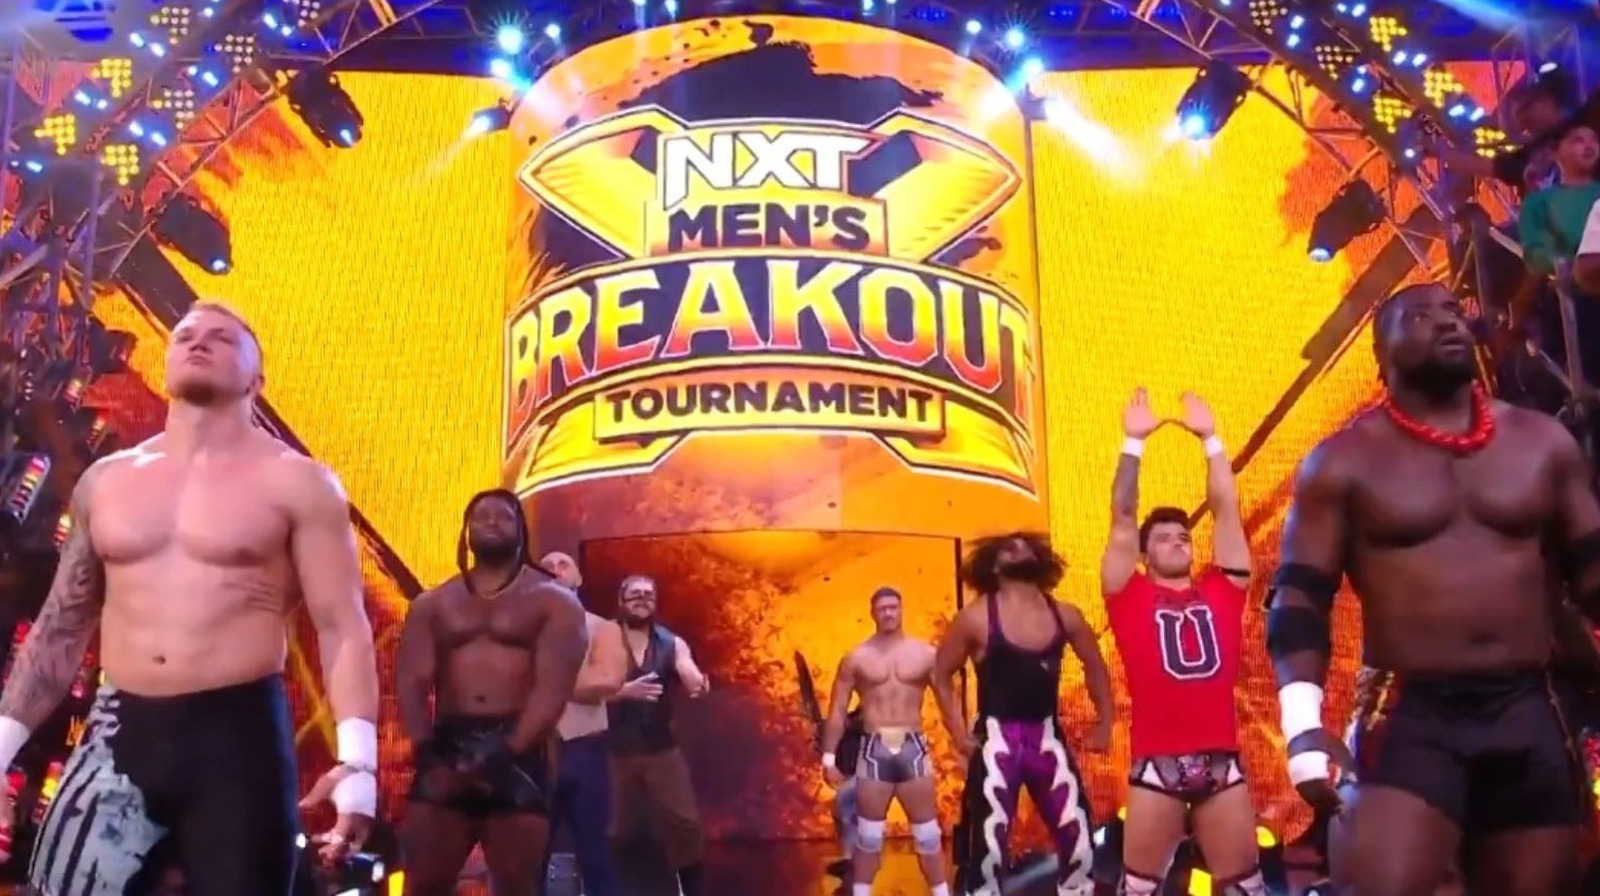 Se revelan los brackets para el Torneo Breakout Masculino de WWE NXT